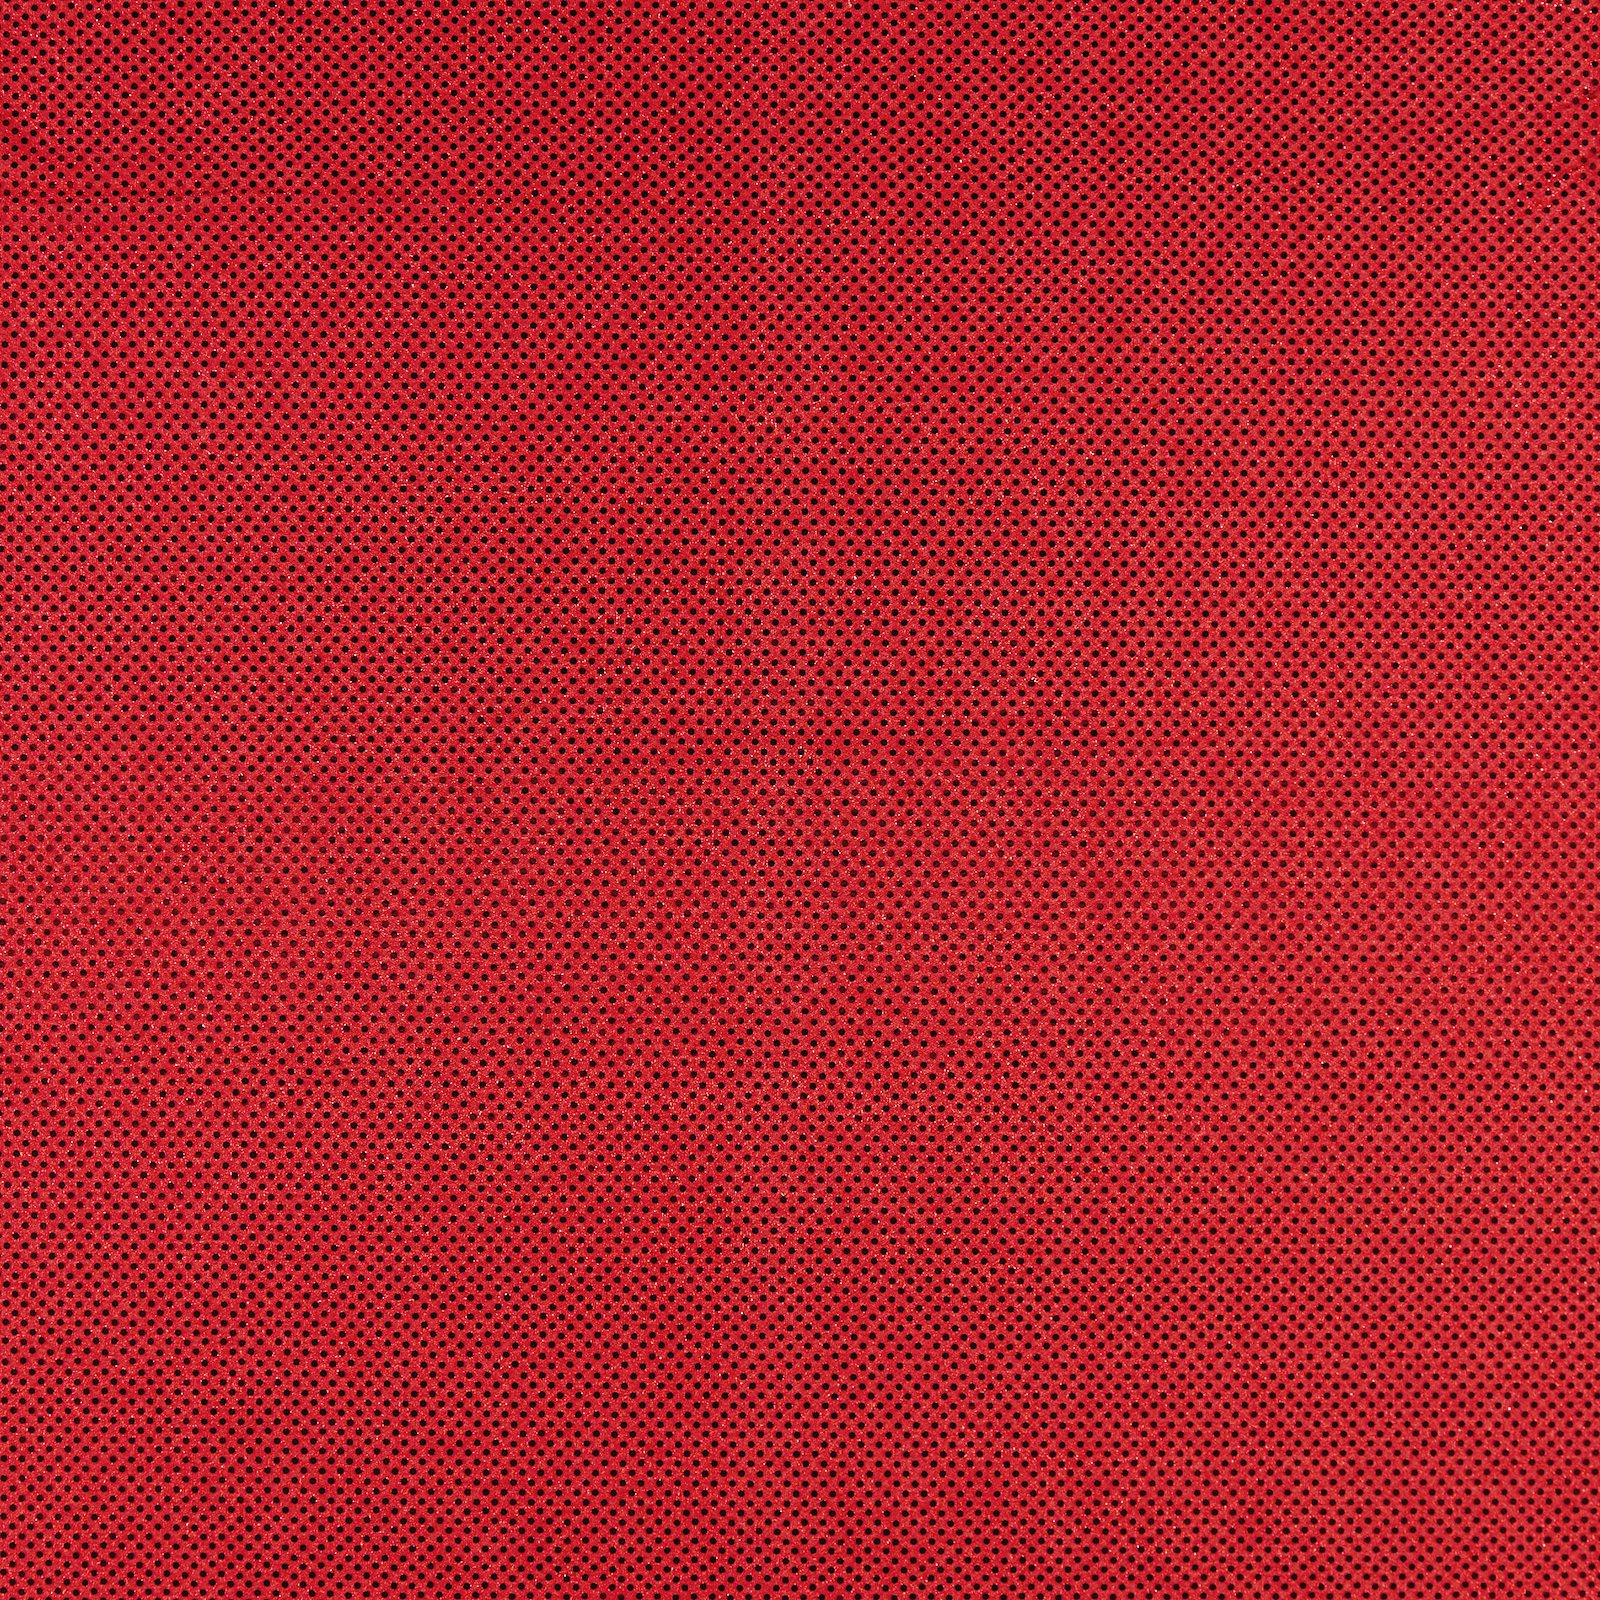 Strikk med folie paljetter rød 3mm 200134_pack_solid